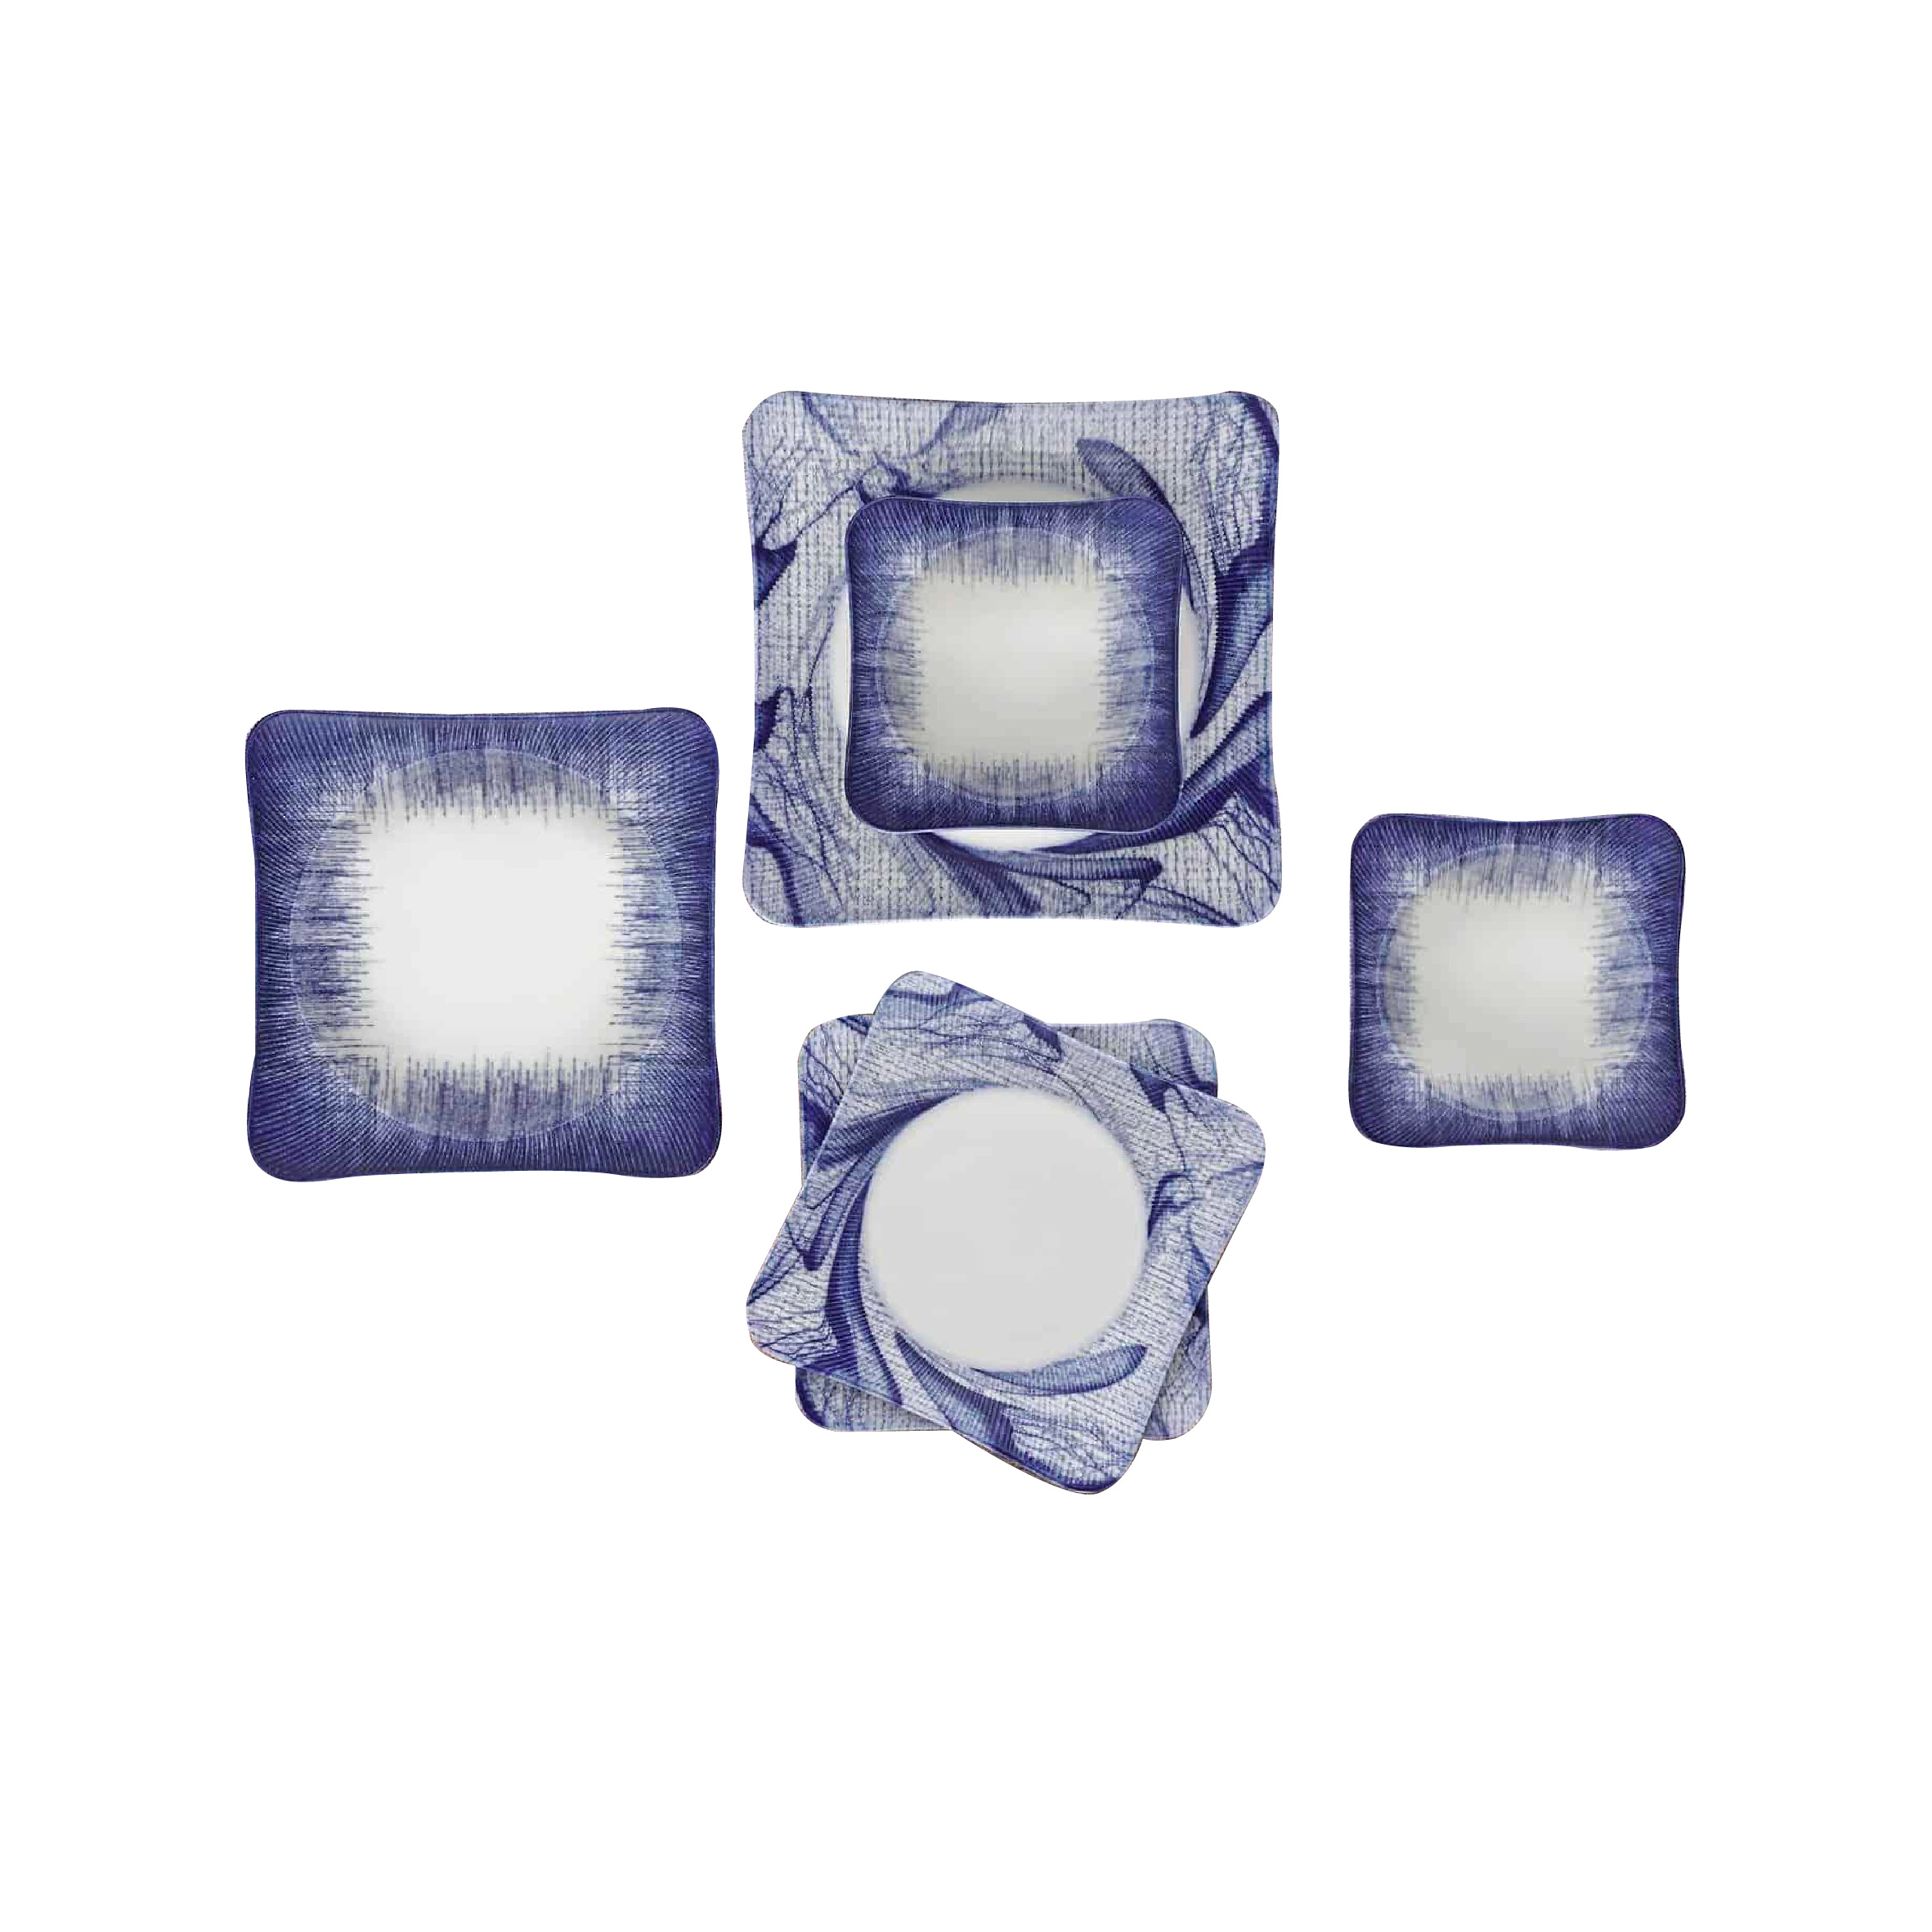 Keramika Square Plates Set Of 24 Blue+White 6 Units 14CM-6 Units 20CM-6 Units 19CM-6 Units 25cm, TUR-72485